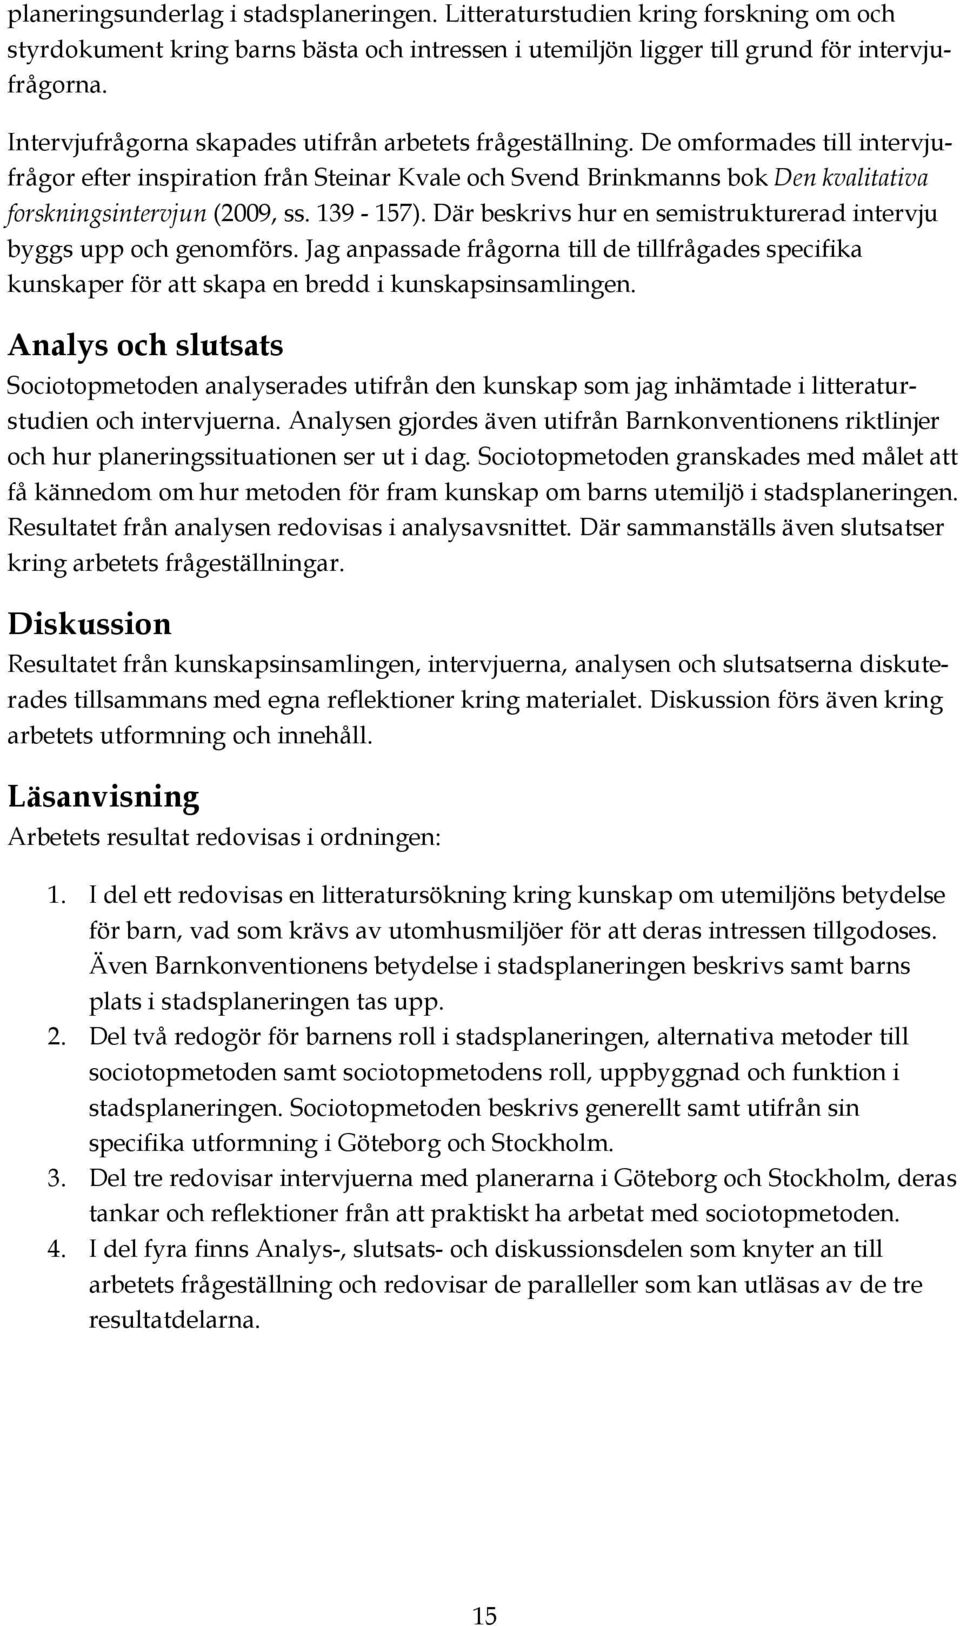 De omformades till intervjufrågor efter inspiration från Steinar Kvale och Svend Brinkmanns bok Den kvalitativa forskningsintervjun (2009, ss. 139-157).